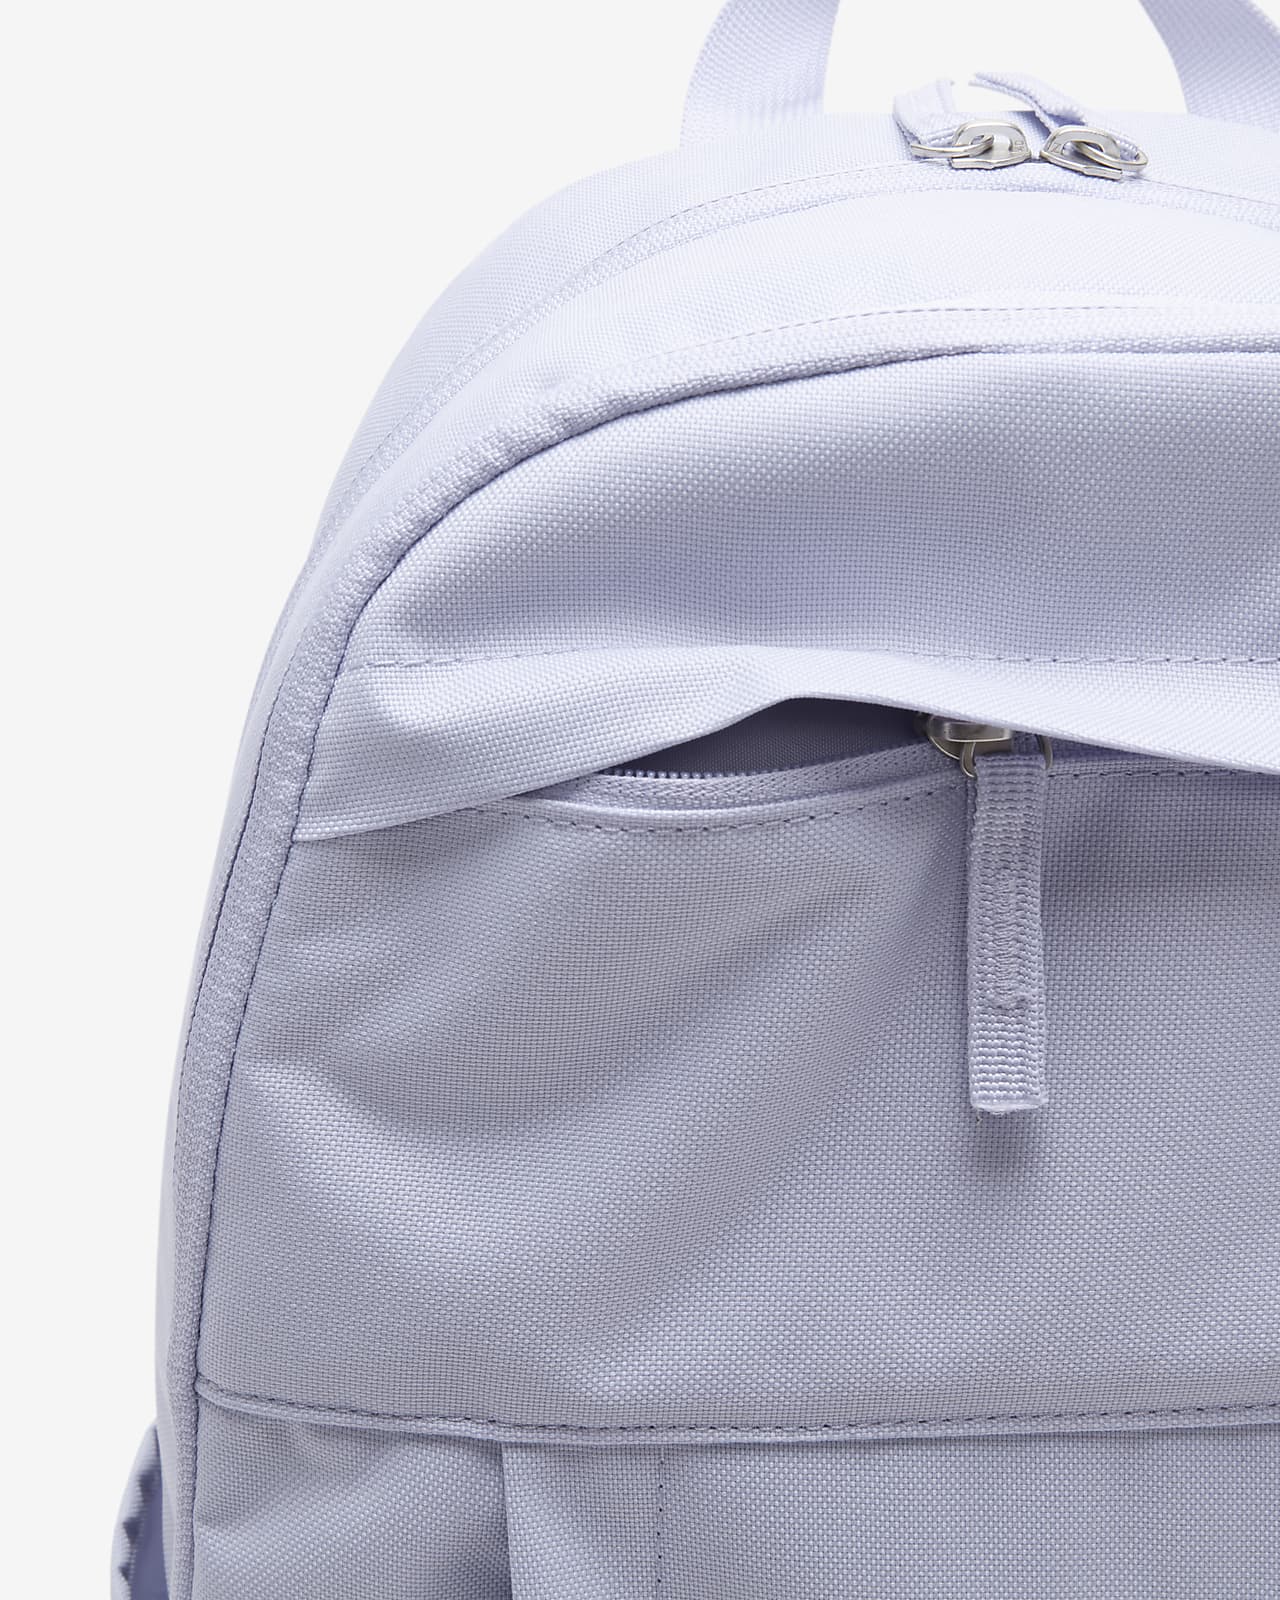 Nike Backpack (21L). Nike IN